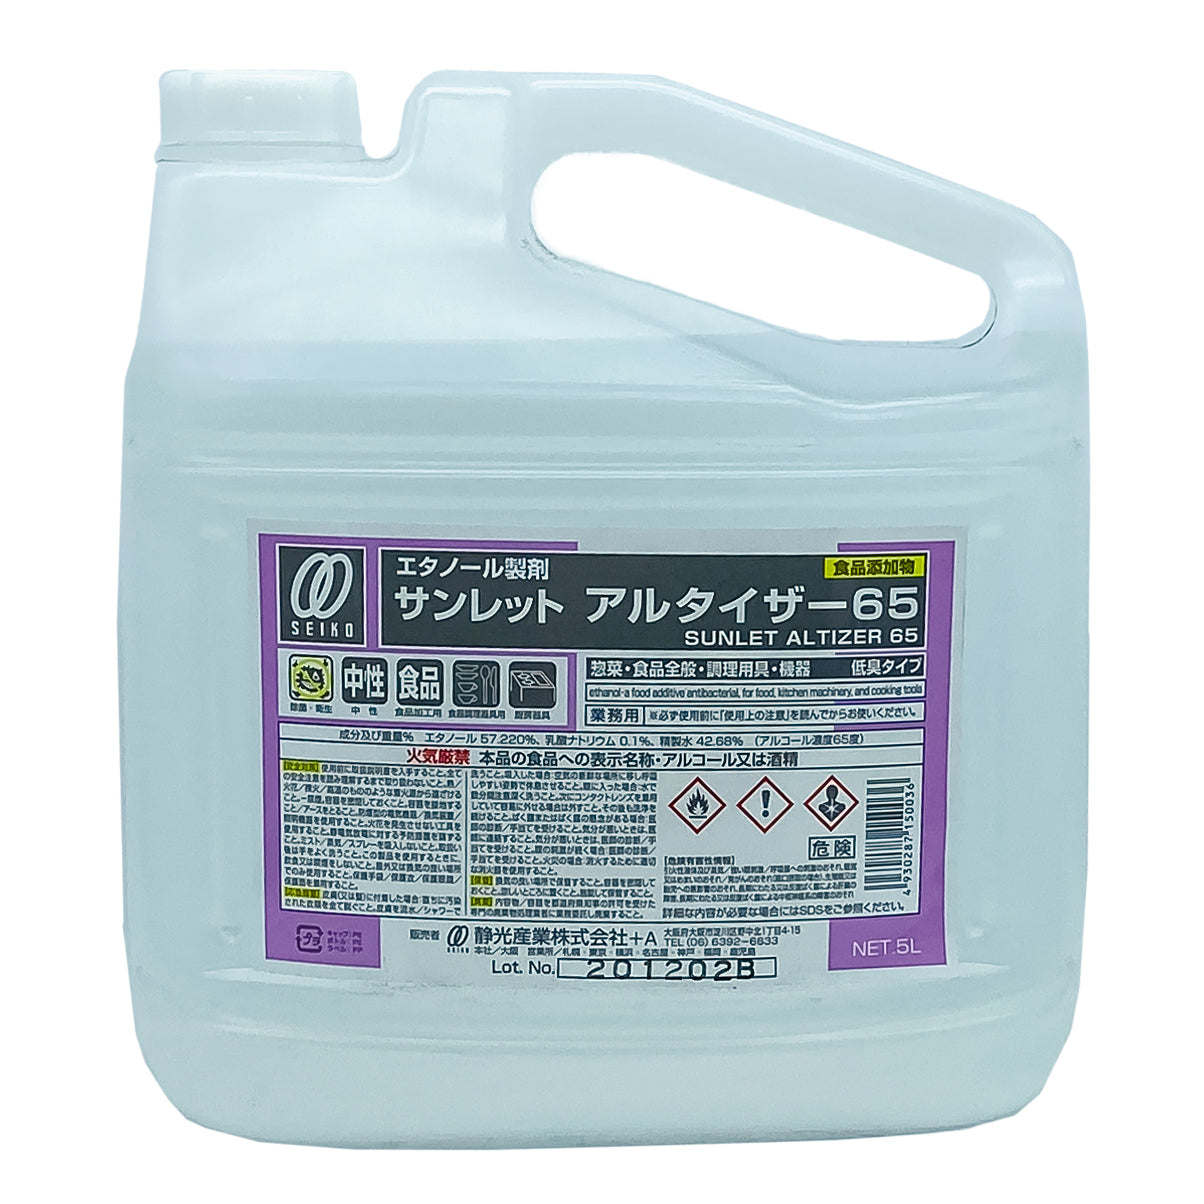 【中性アルコール】静光産業 サンレット アルタイザー65 5L